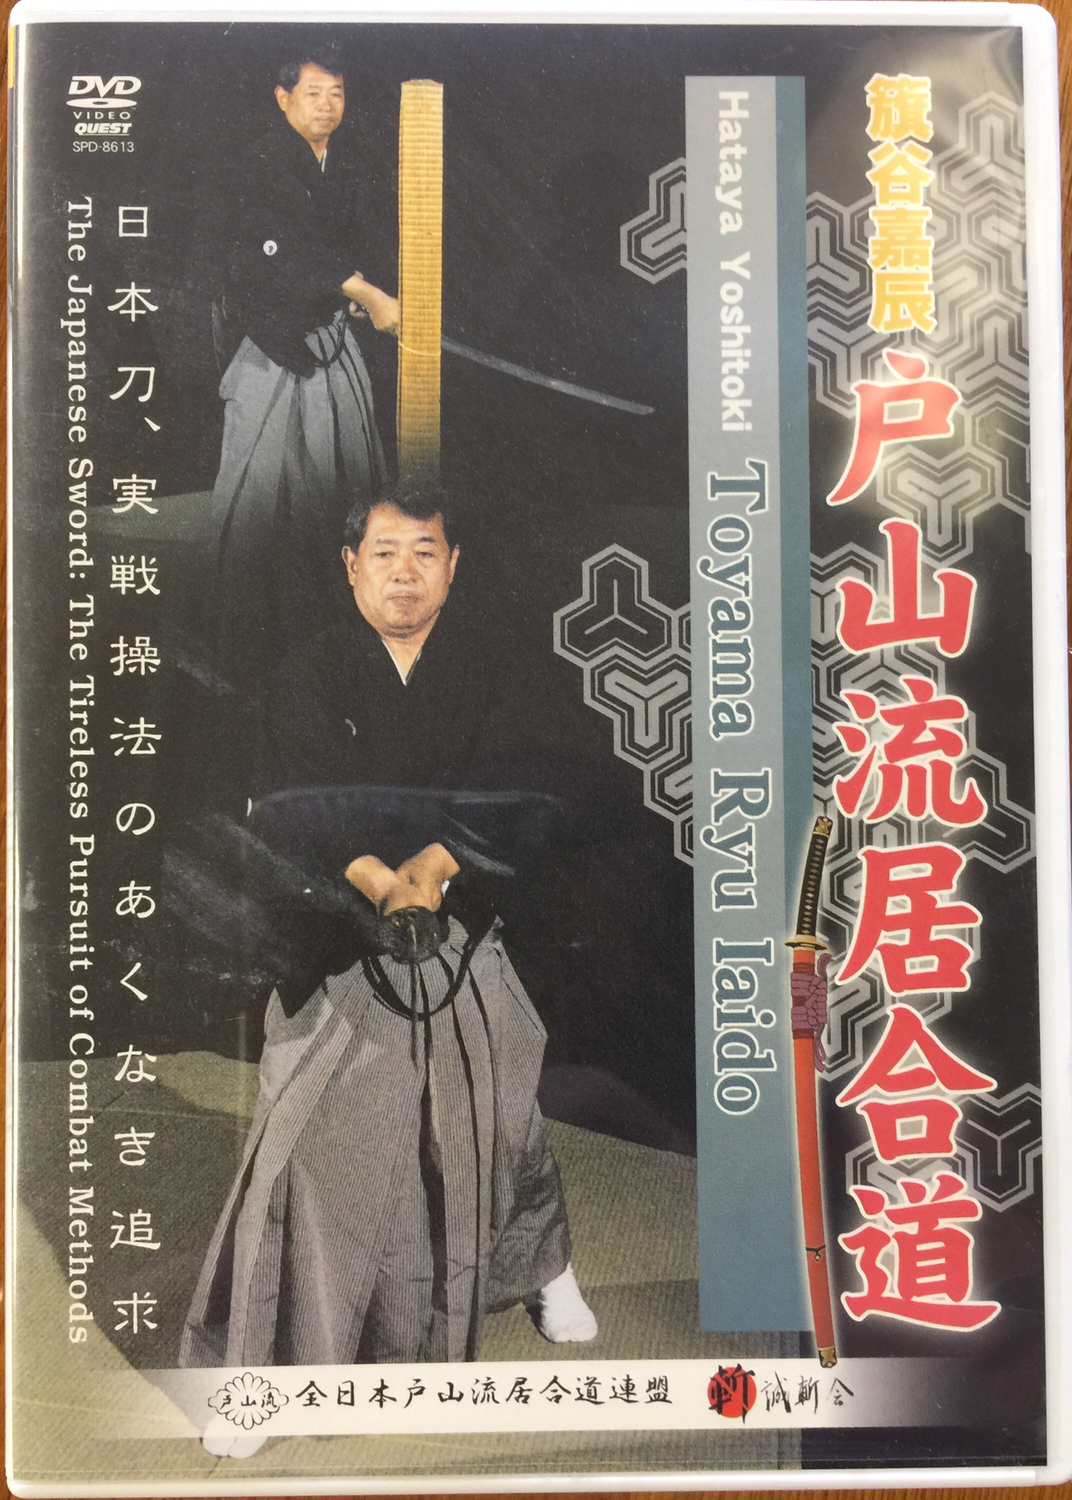 DVD - Toyama Ryu Iaido by Yoshitoki Hataya